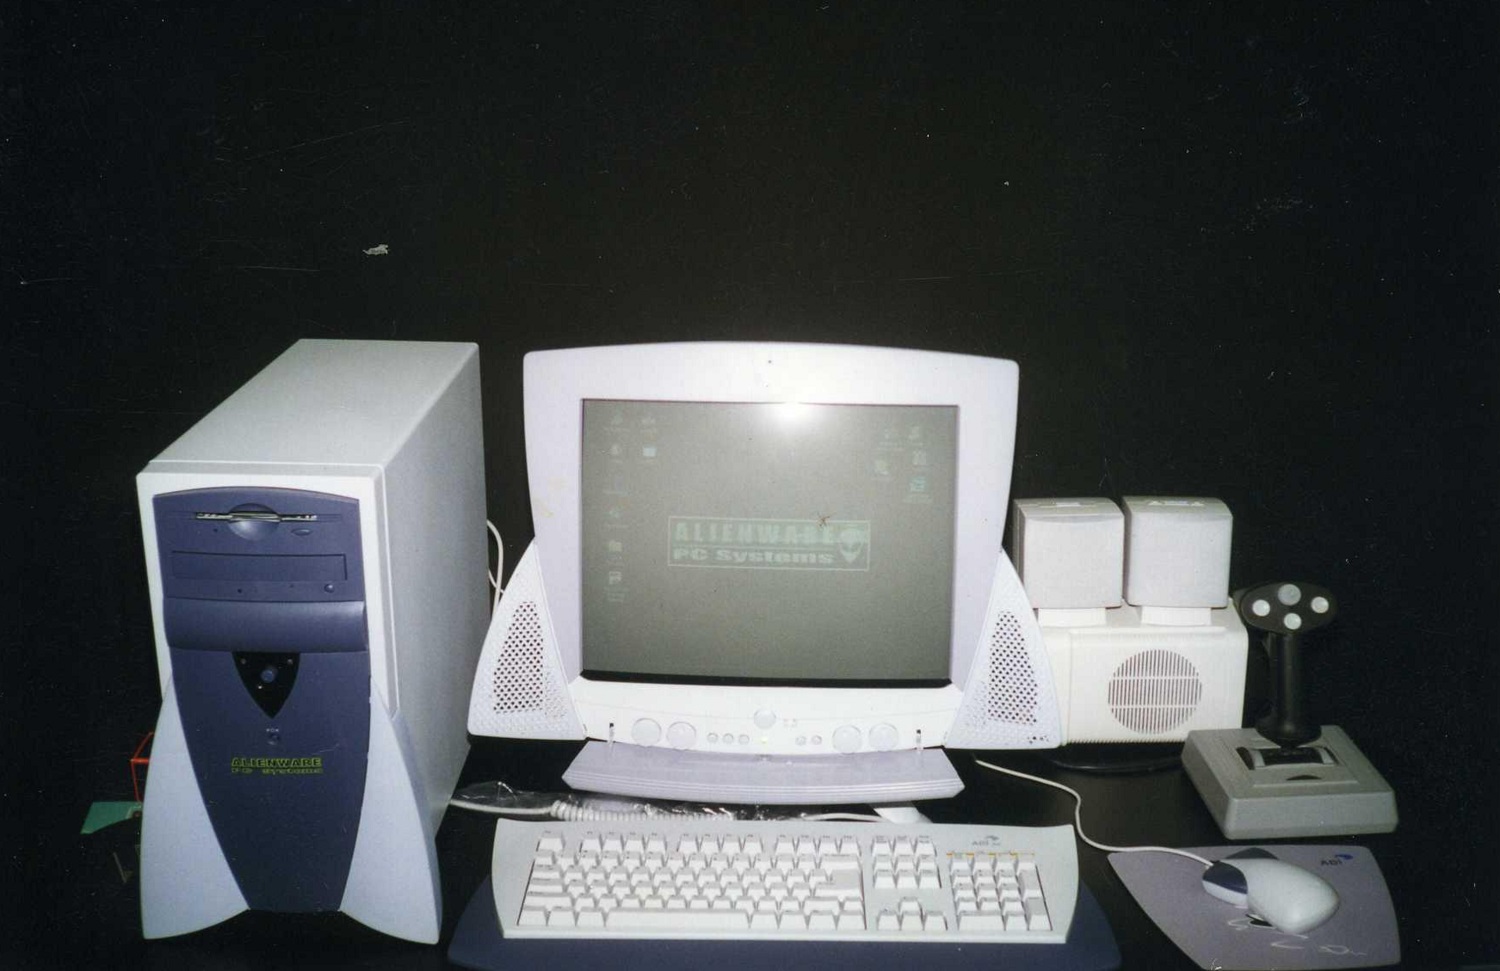 The first Alienware desktop.